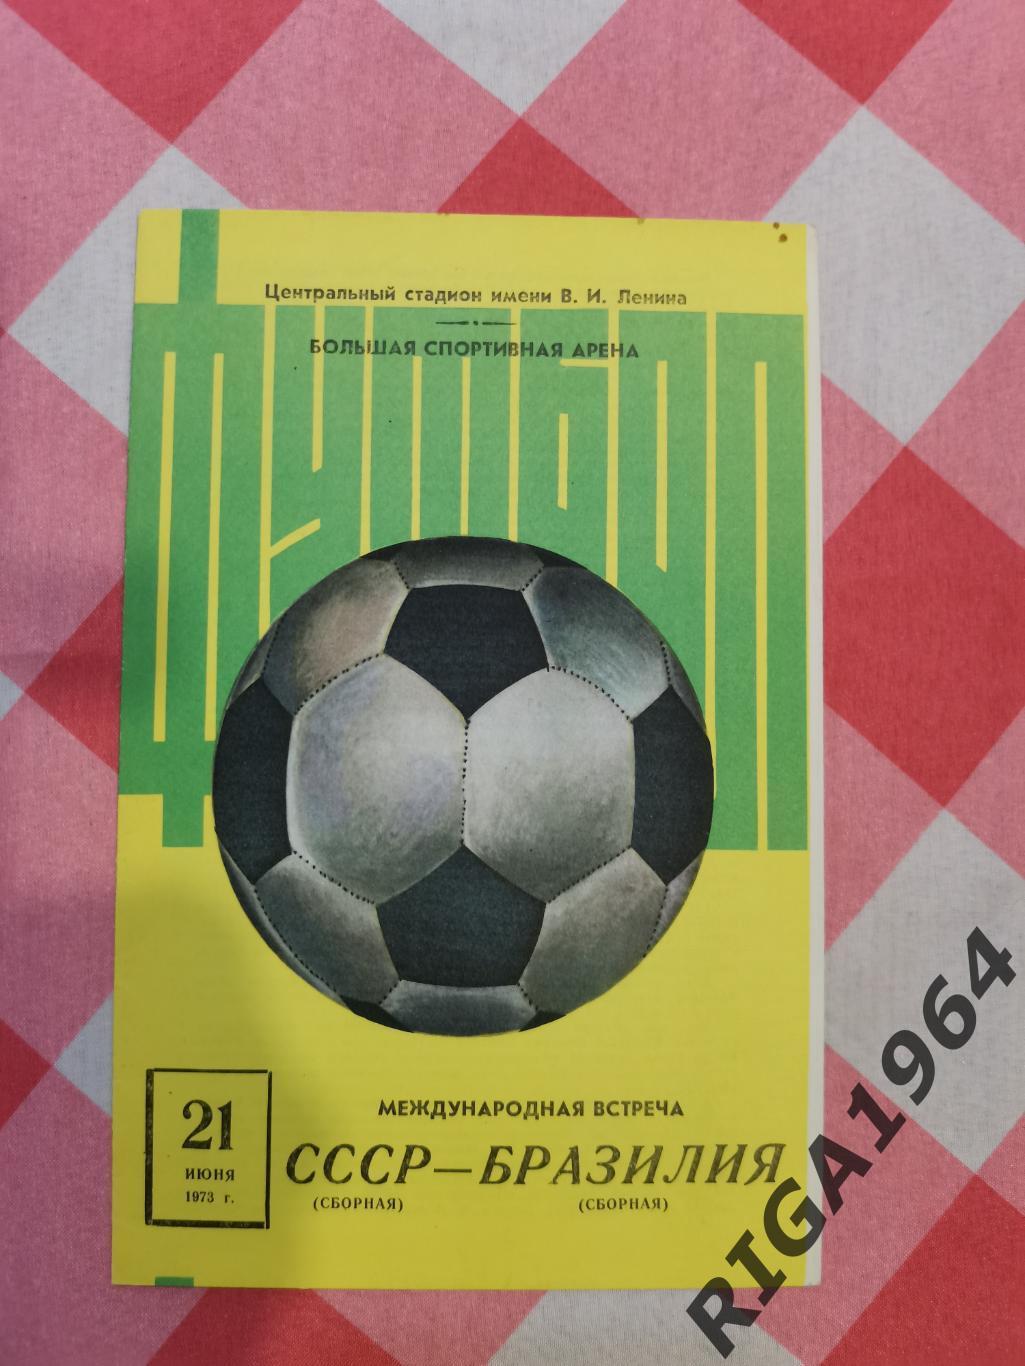 Товарищеский матч СССР-Бразилия (21.06.1973)